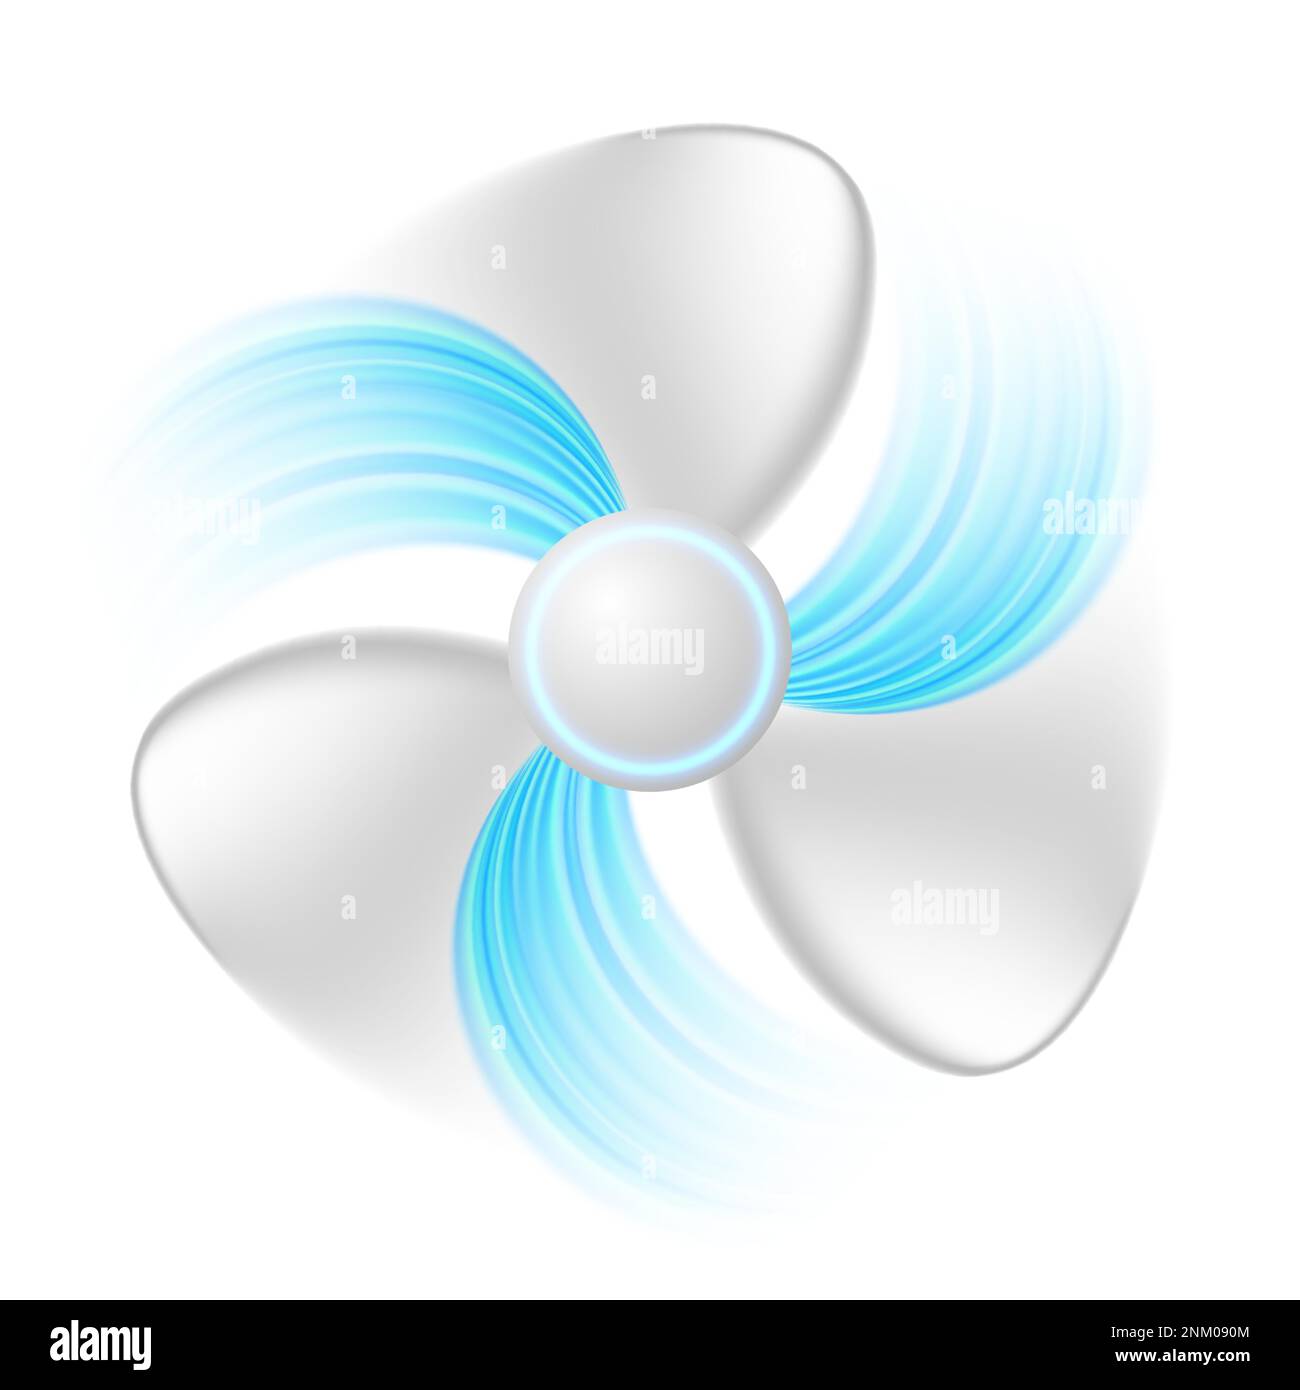 Ventola con correnti d'aria blu isolata su sfondo bianco. Ventilatore refrigerazione, aria condizionata, climatizzazione. Vettore di ventilazione dell'aria Illustrazione Vettoriale